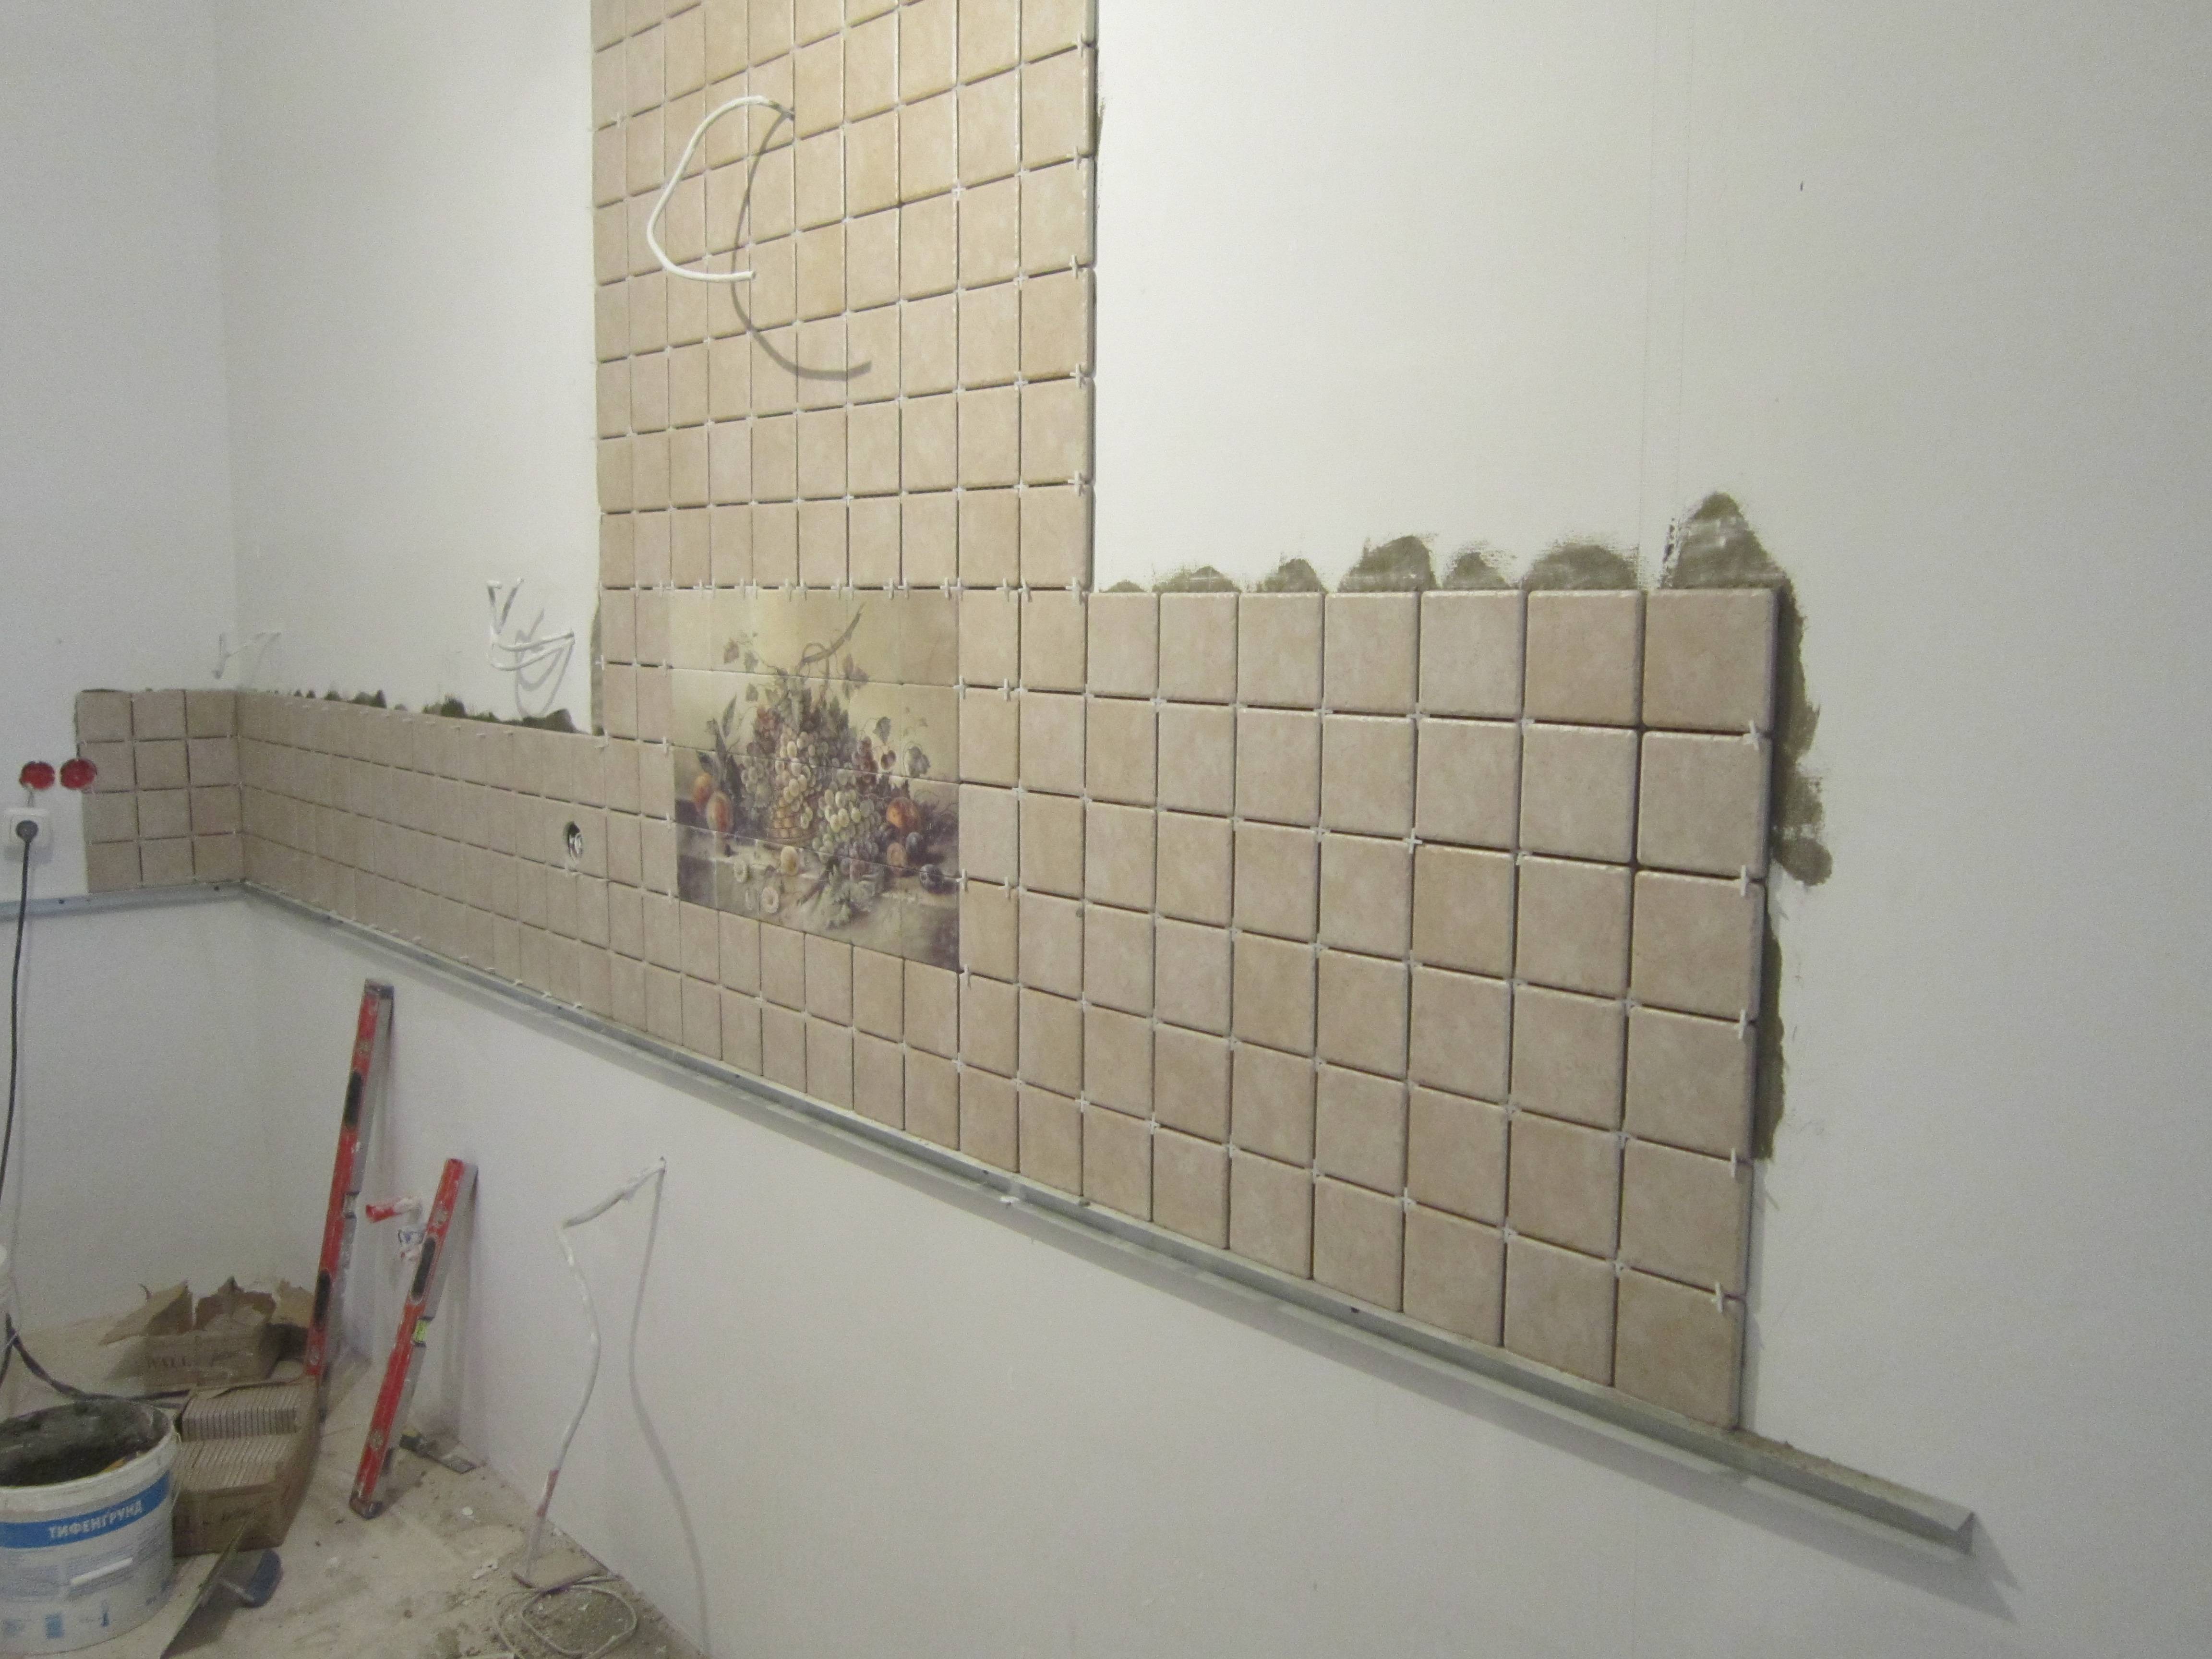 Как приклеить плитку на стену в кухне — пошаговая инструкция